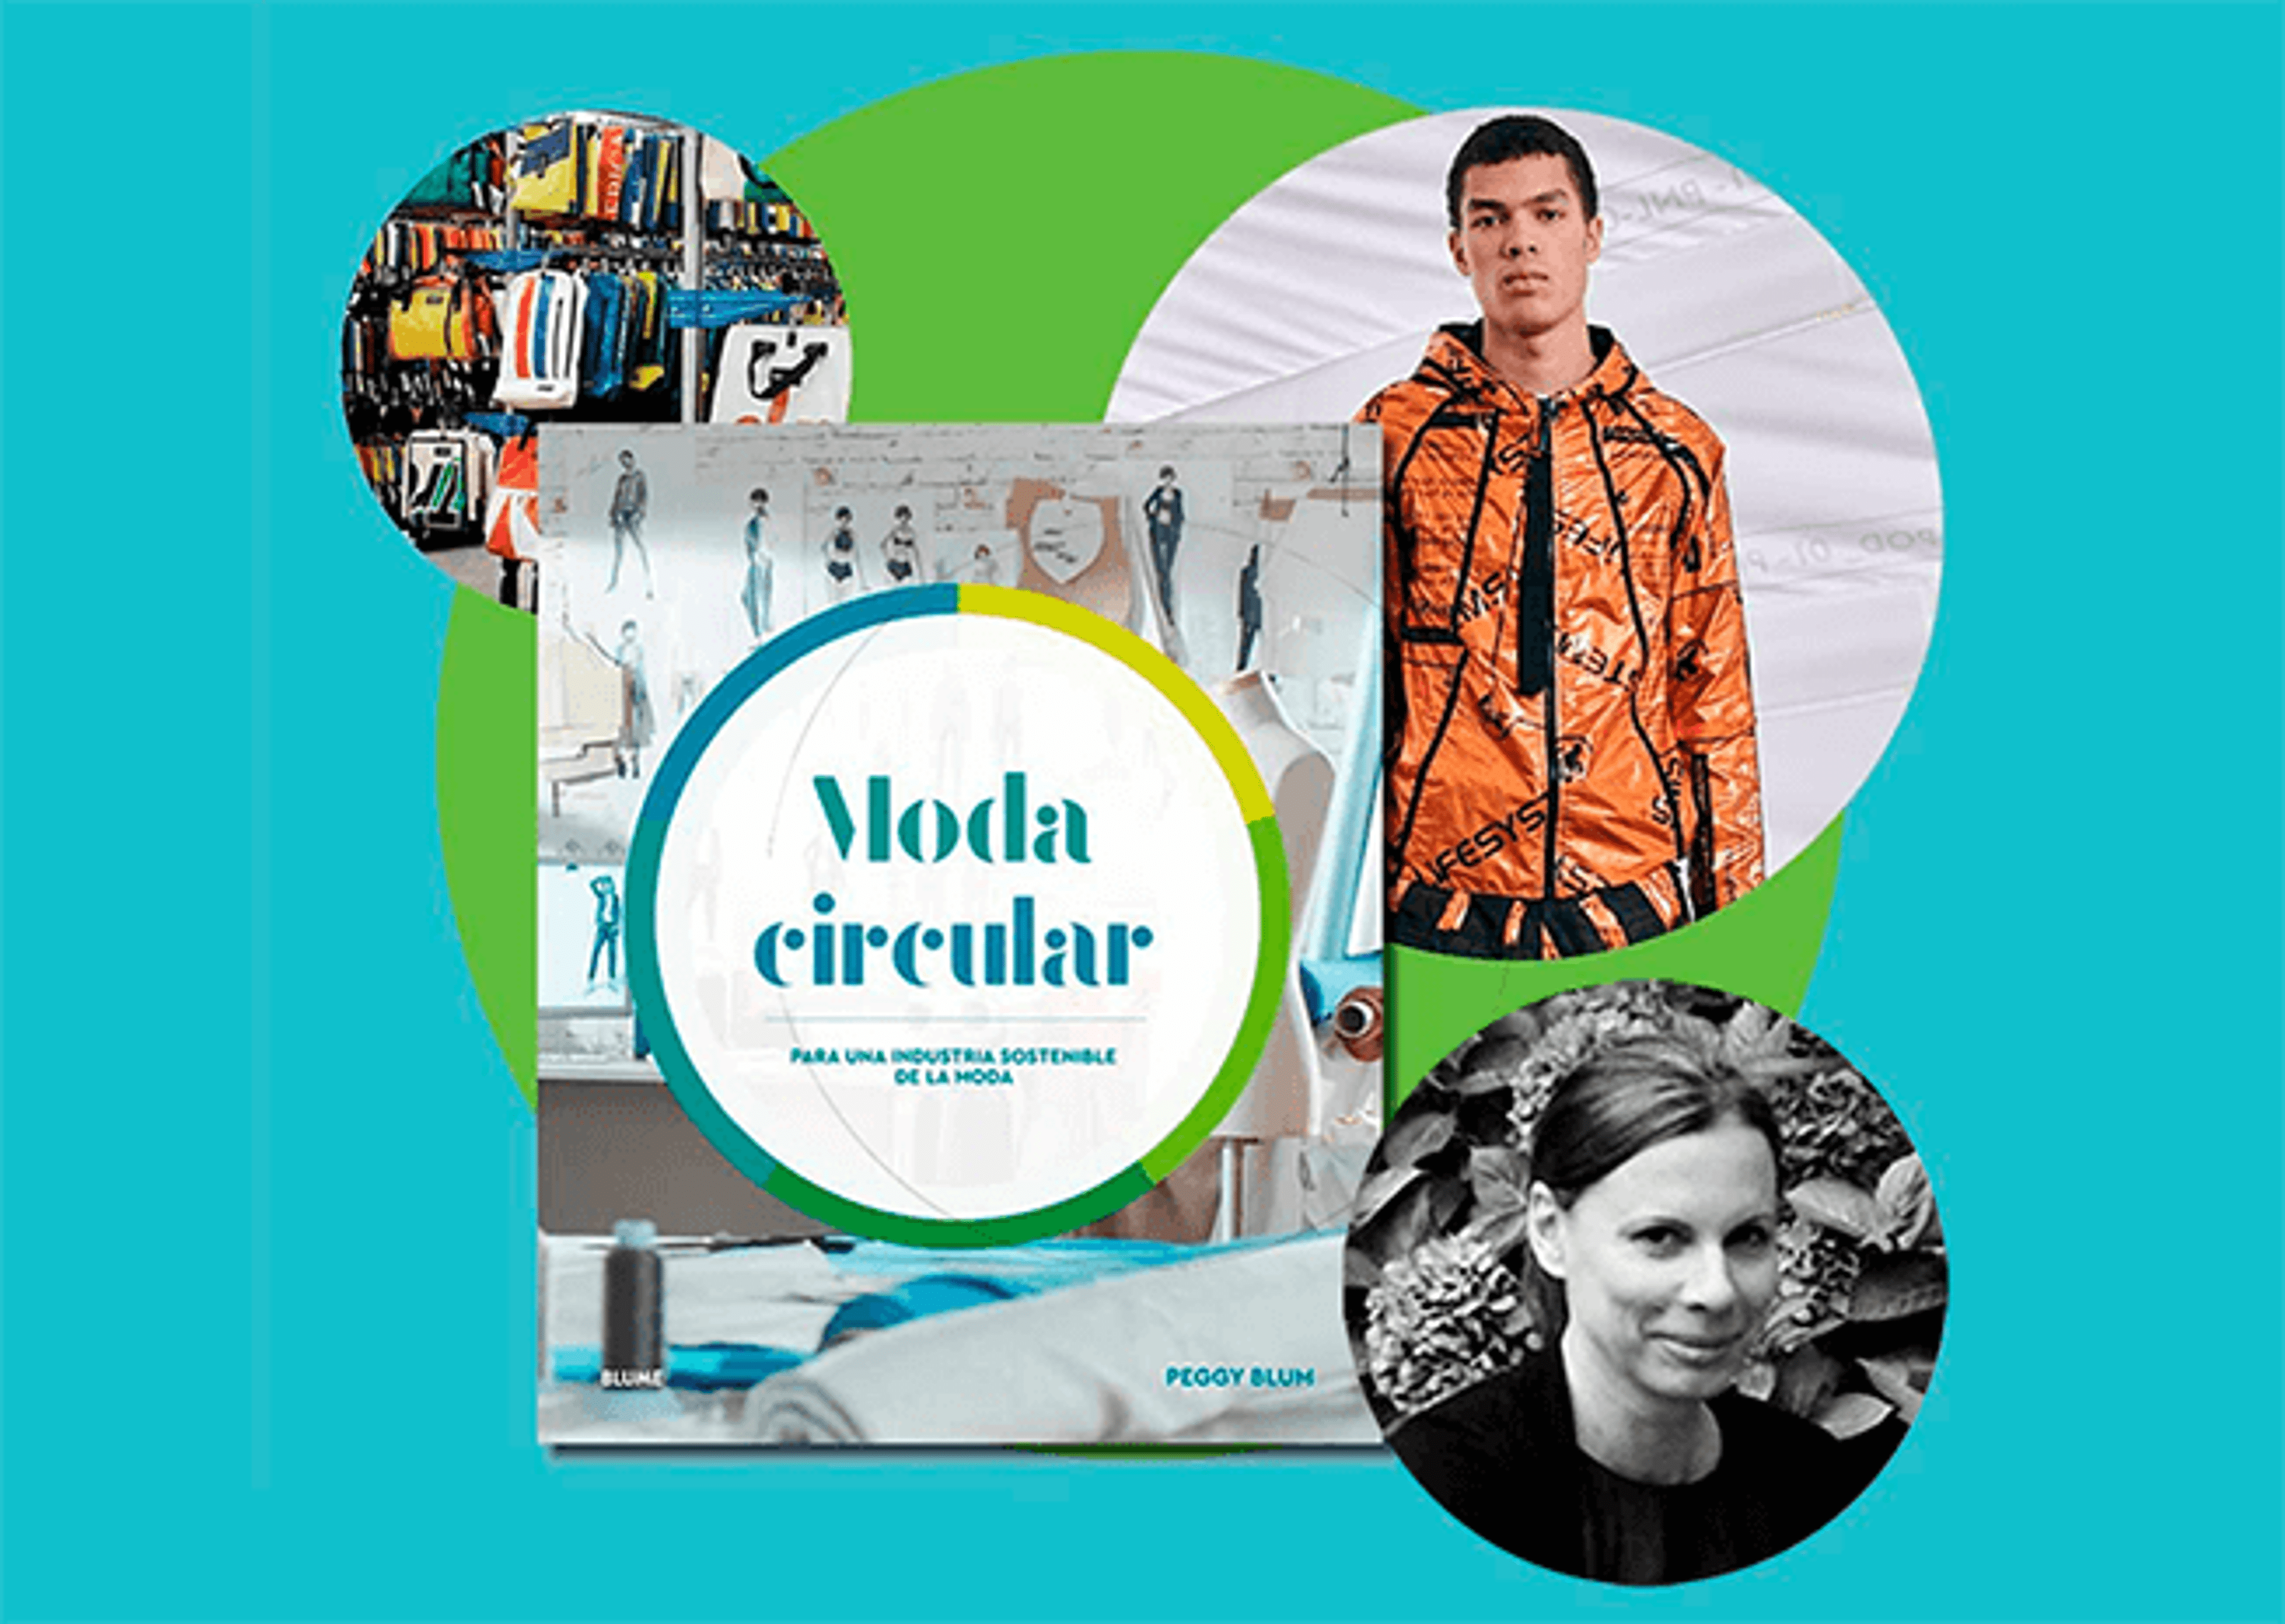 Un collage de imágenes con individuos y prendas de moda, con el tema central de "Moda circular" para la moda sostenible.